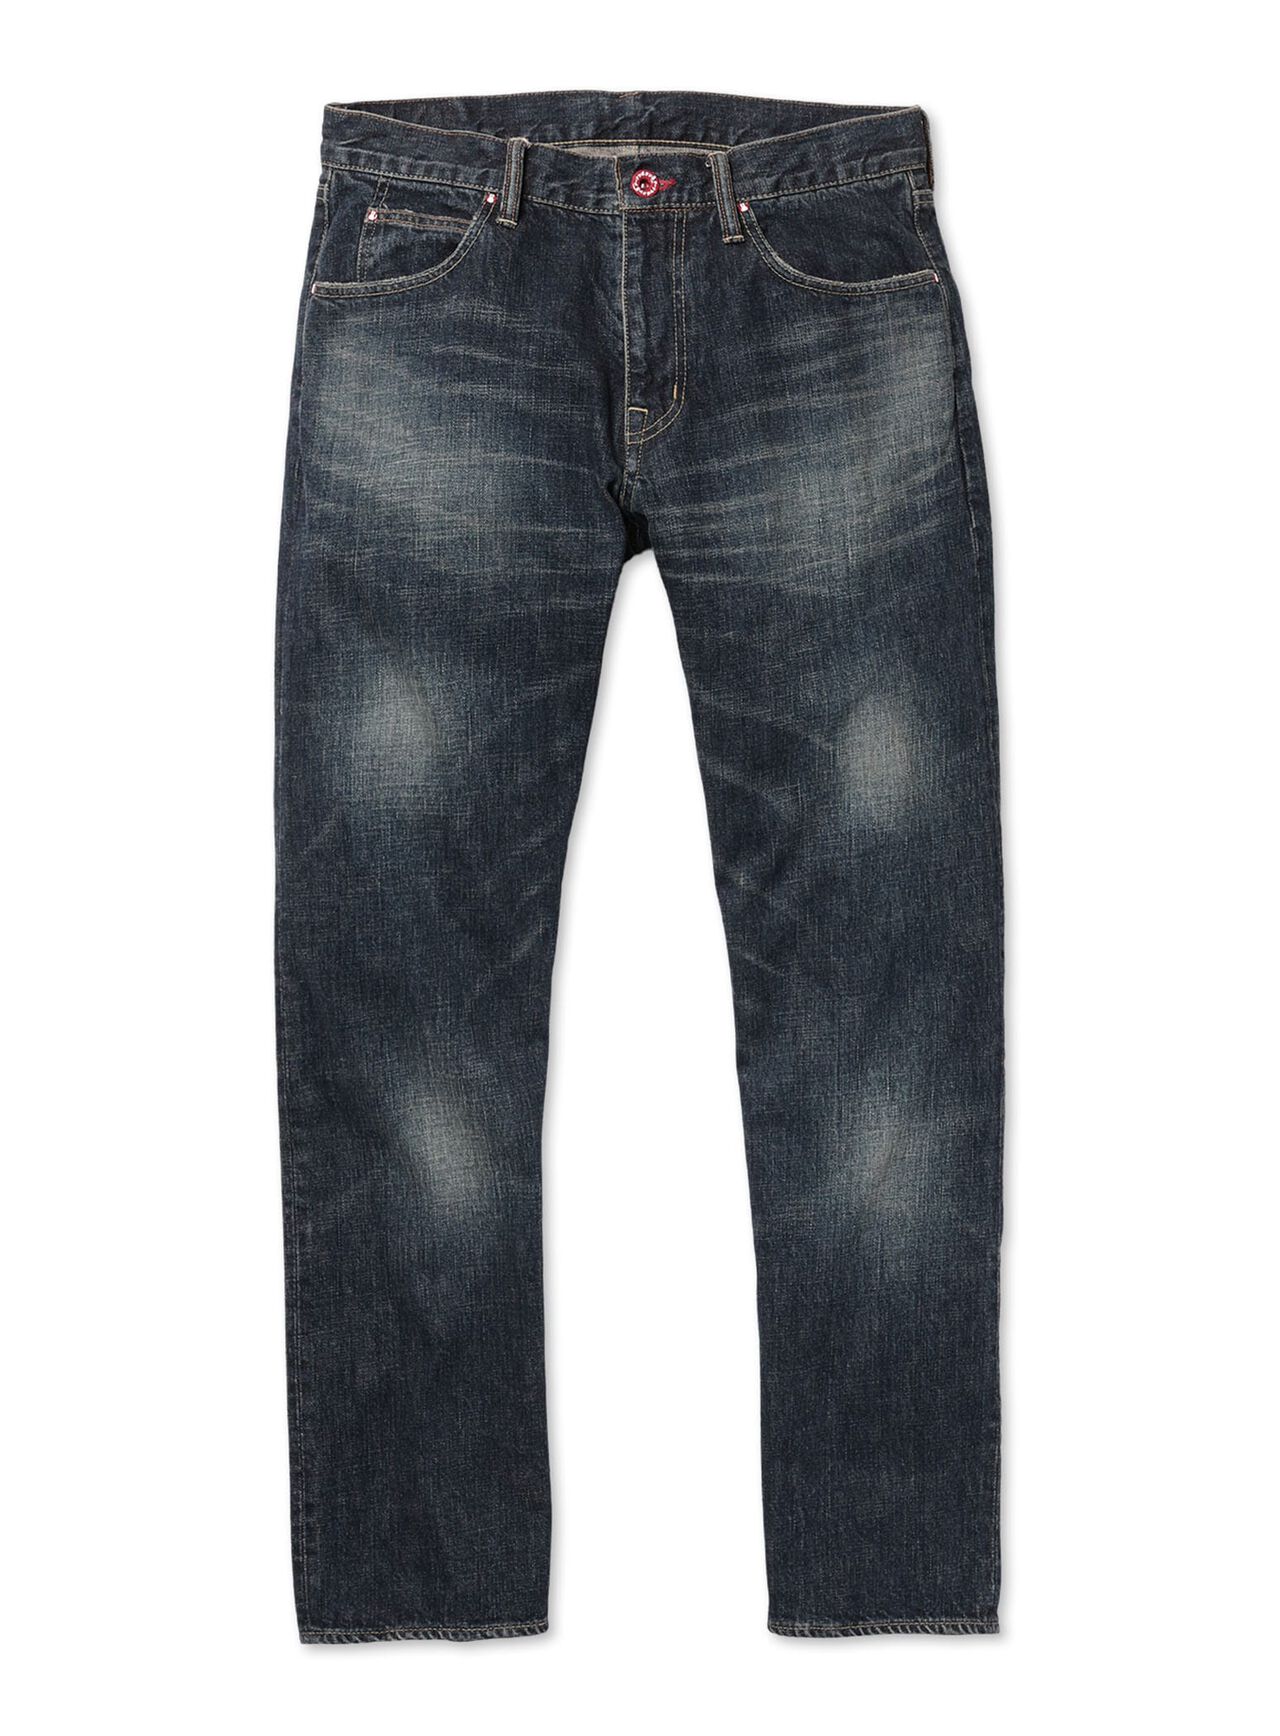 Jeans - Regular 22-U2 Four knees,, large image number 0